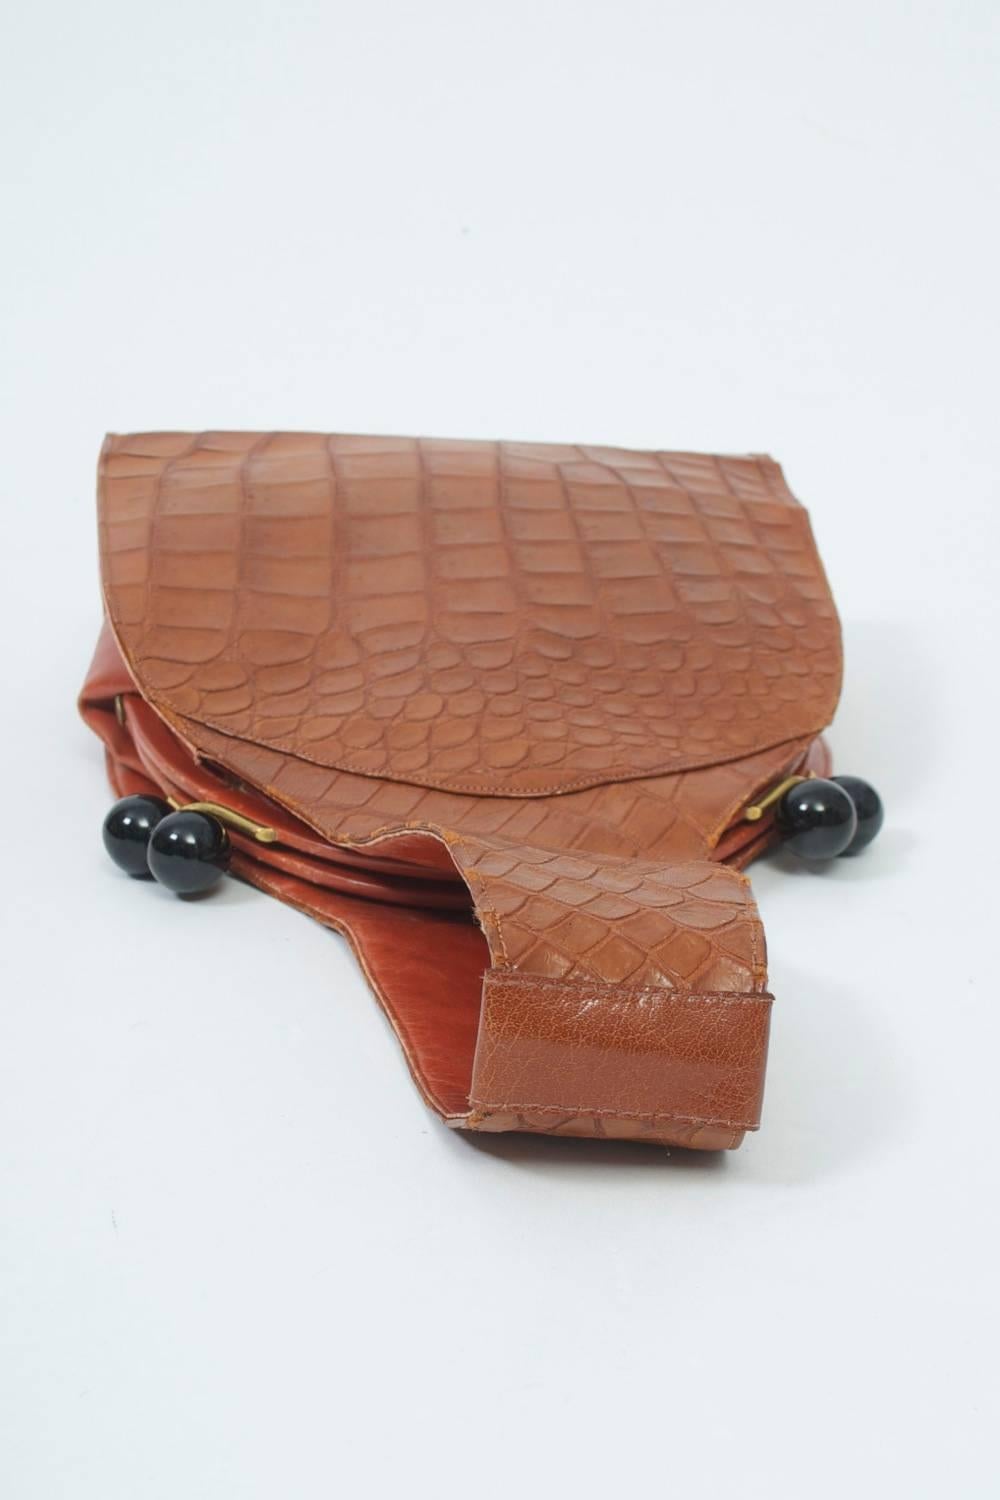 Koret Croc Wrist Handbag 2